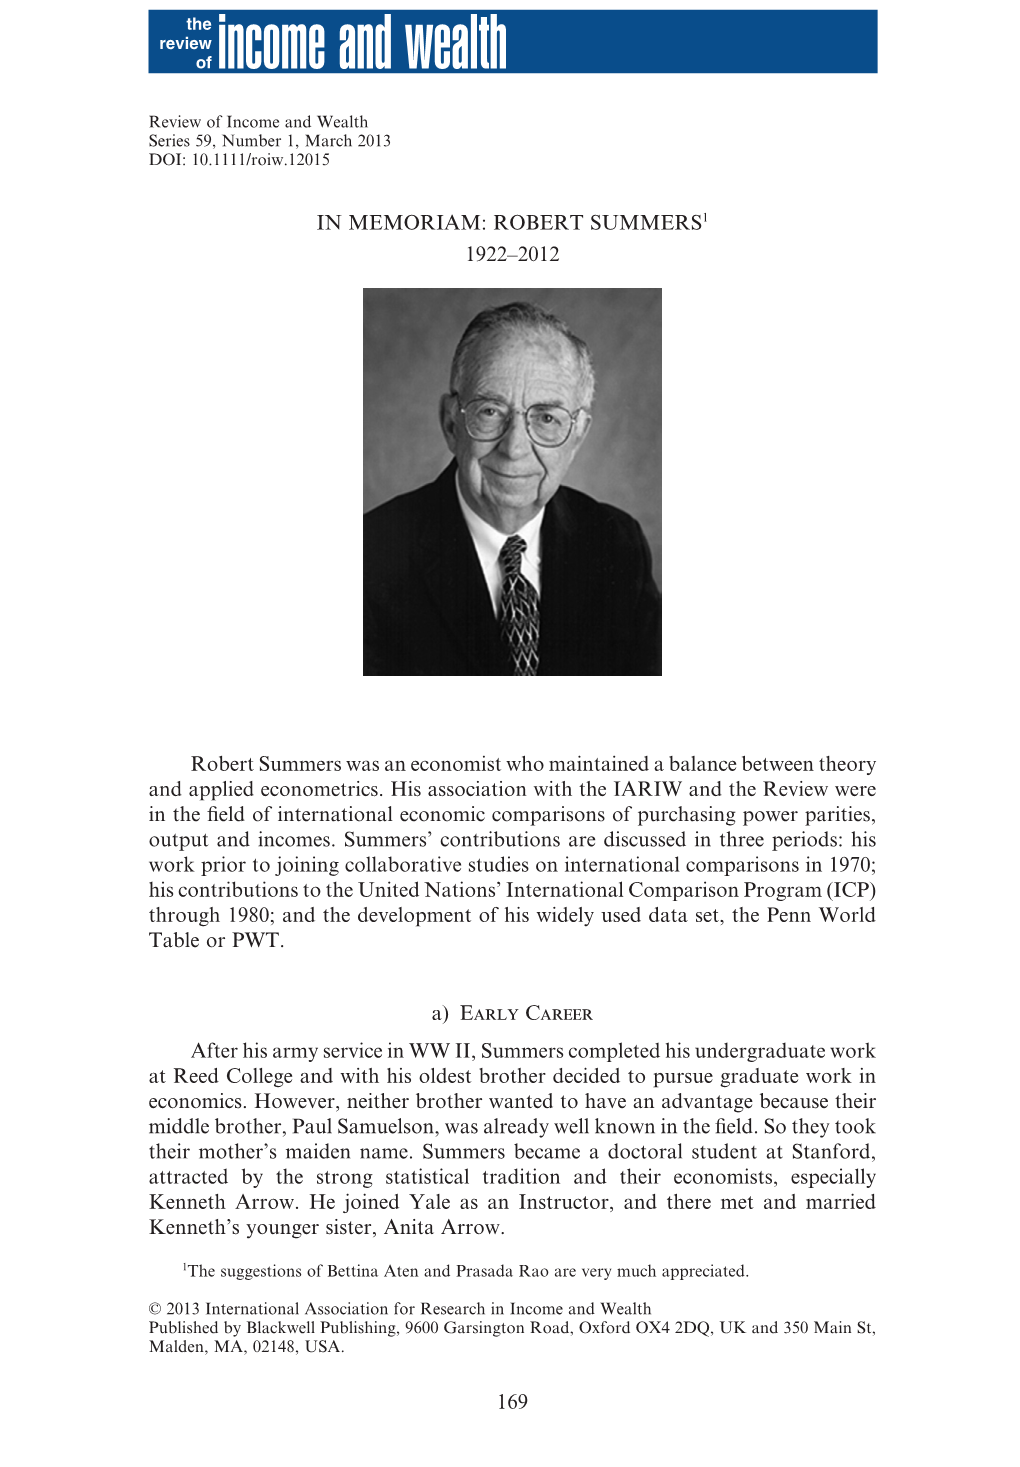 Robert Summers1 1922–2012